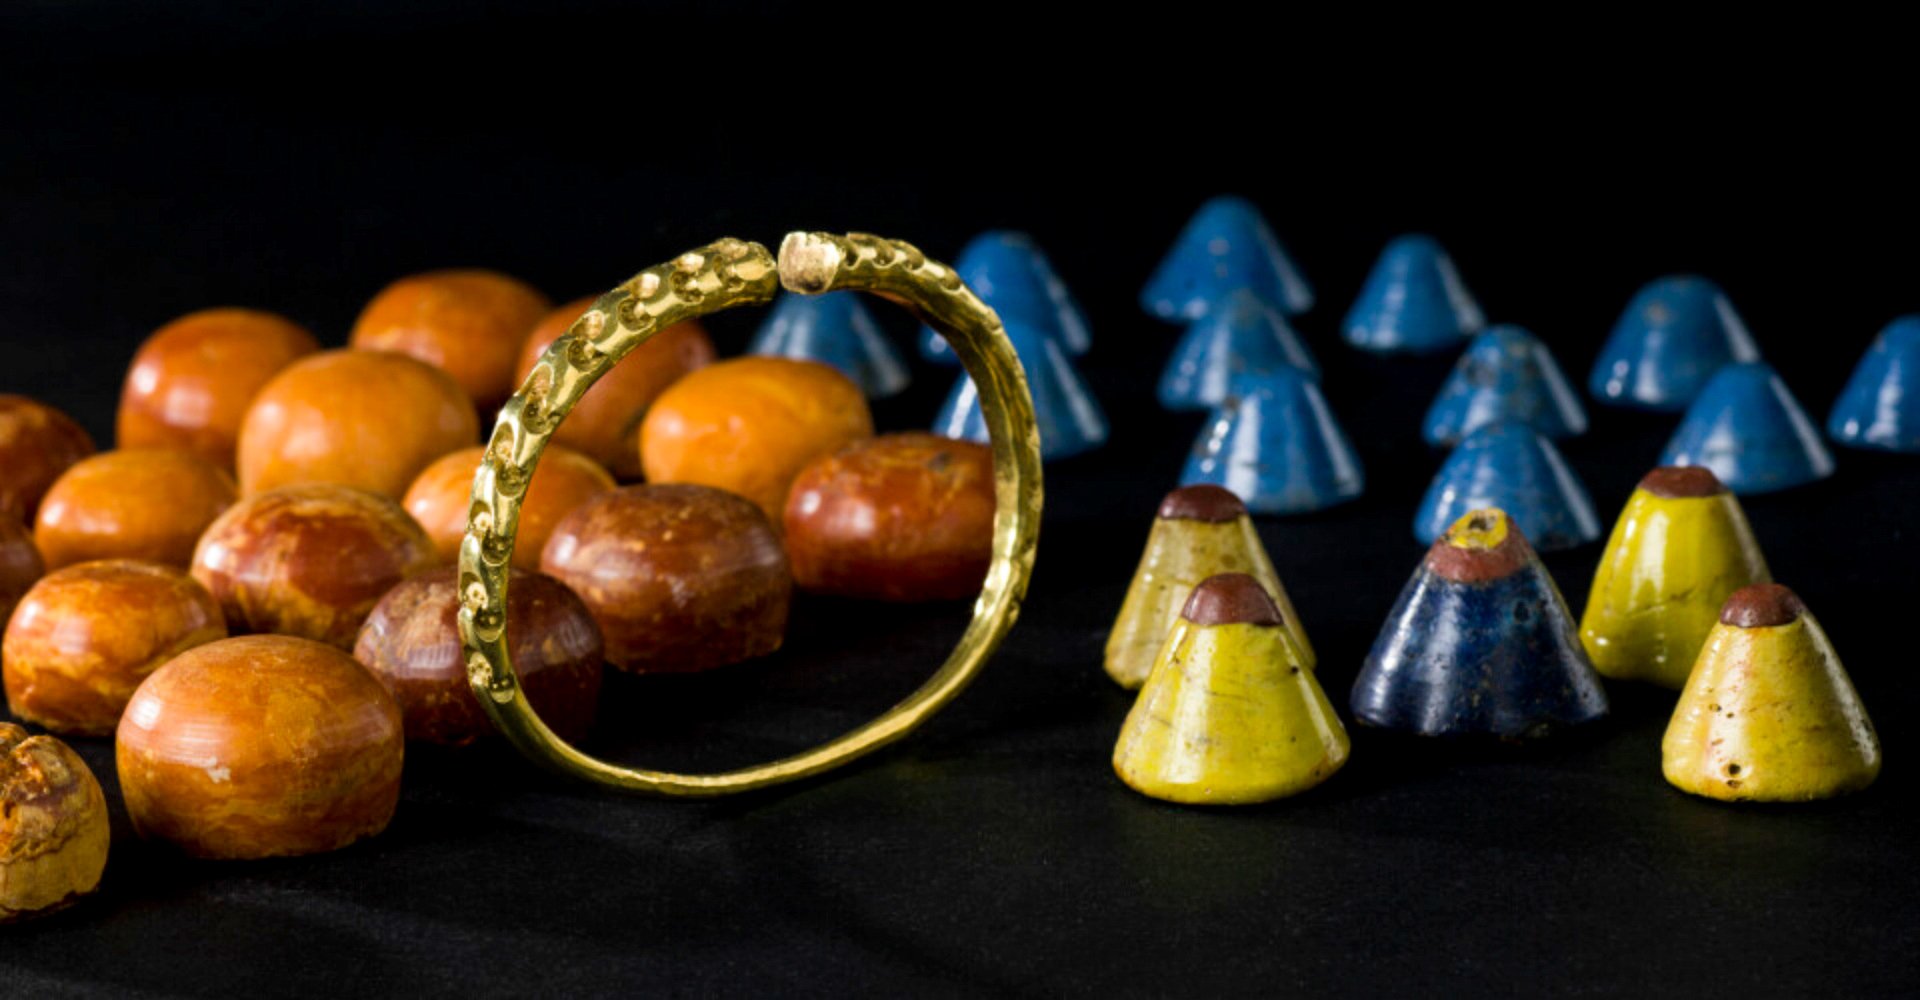 Mohyla Storhaug nebyla nikdy vypleněna, říká archeolog Håkon Reiersen. Víme to jednak díky pozorováním při vykopávkách v 1880. letech XNUMX. století, ale také proto, že se našlo tolik cenných předmětů – jako například tento zlatý prsten na paži a velkolepá sada herních figurek ze skla a jantaru.